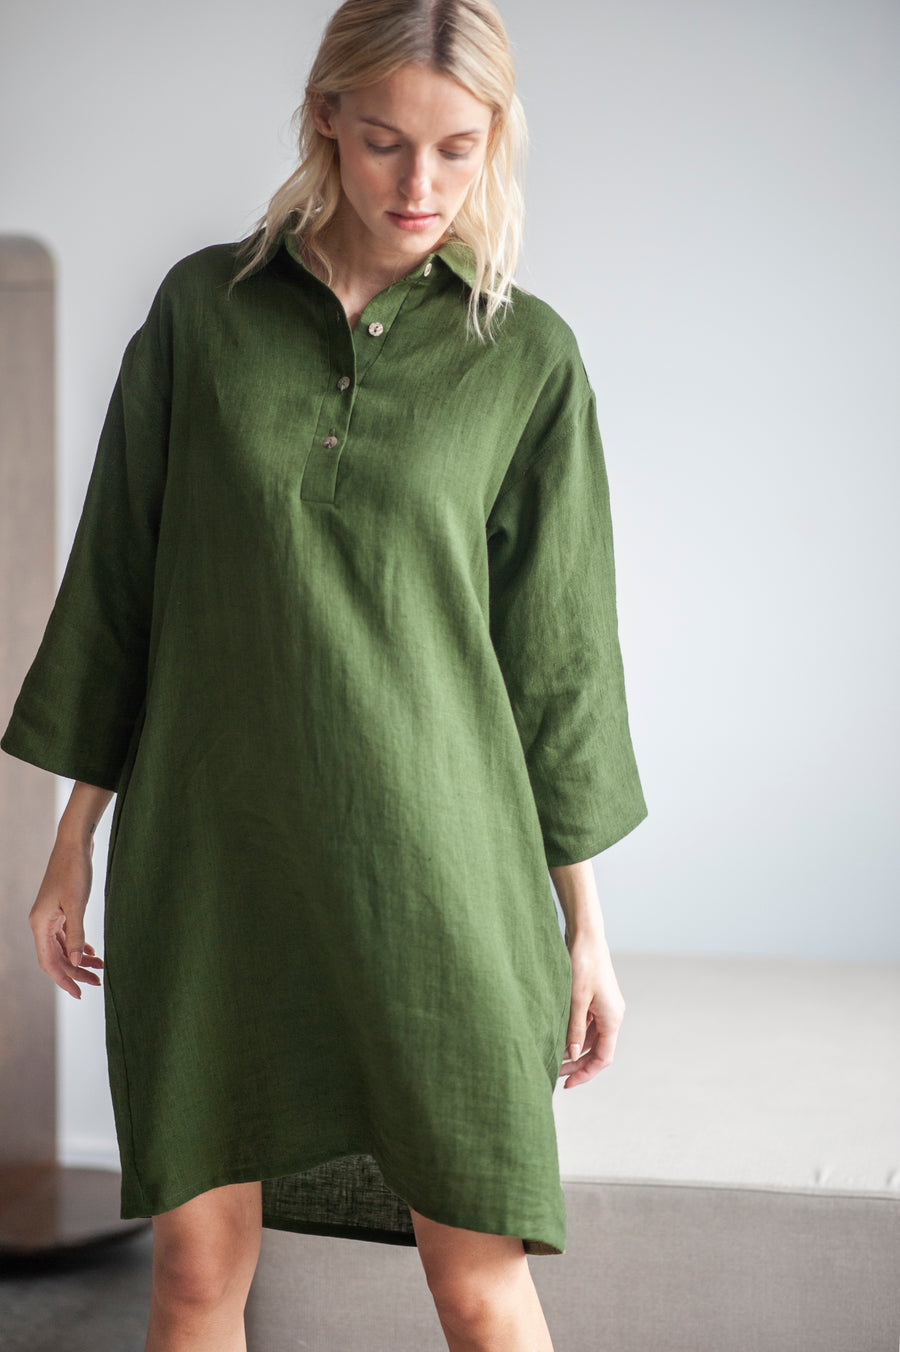 Natural Light Linen Shirt Dress – Sand Snow Linen